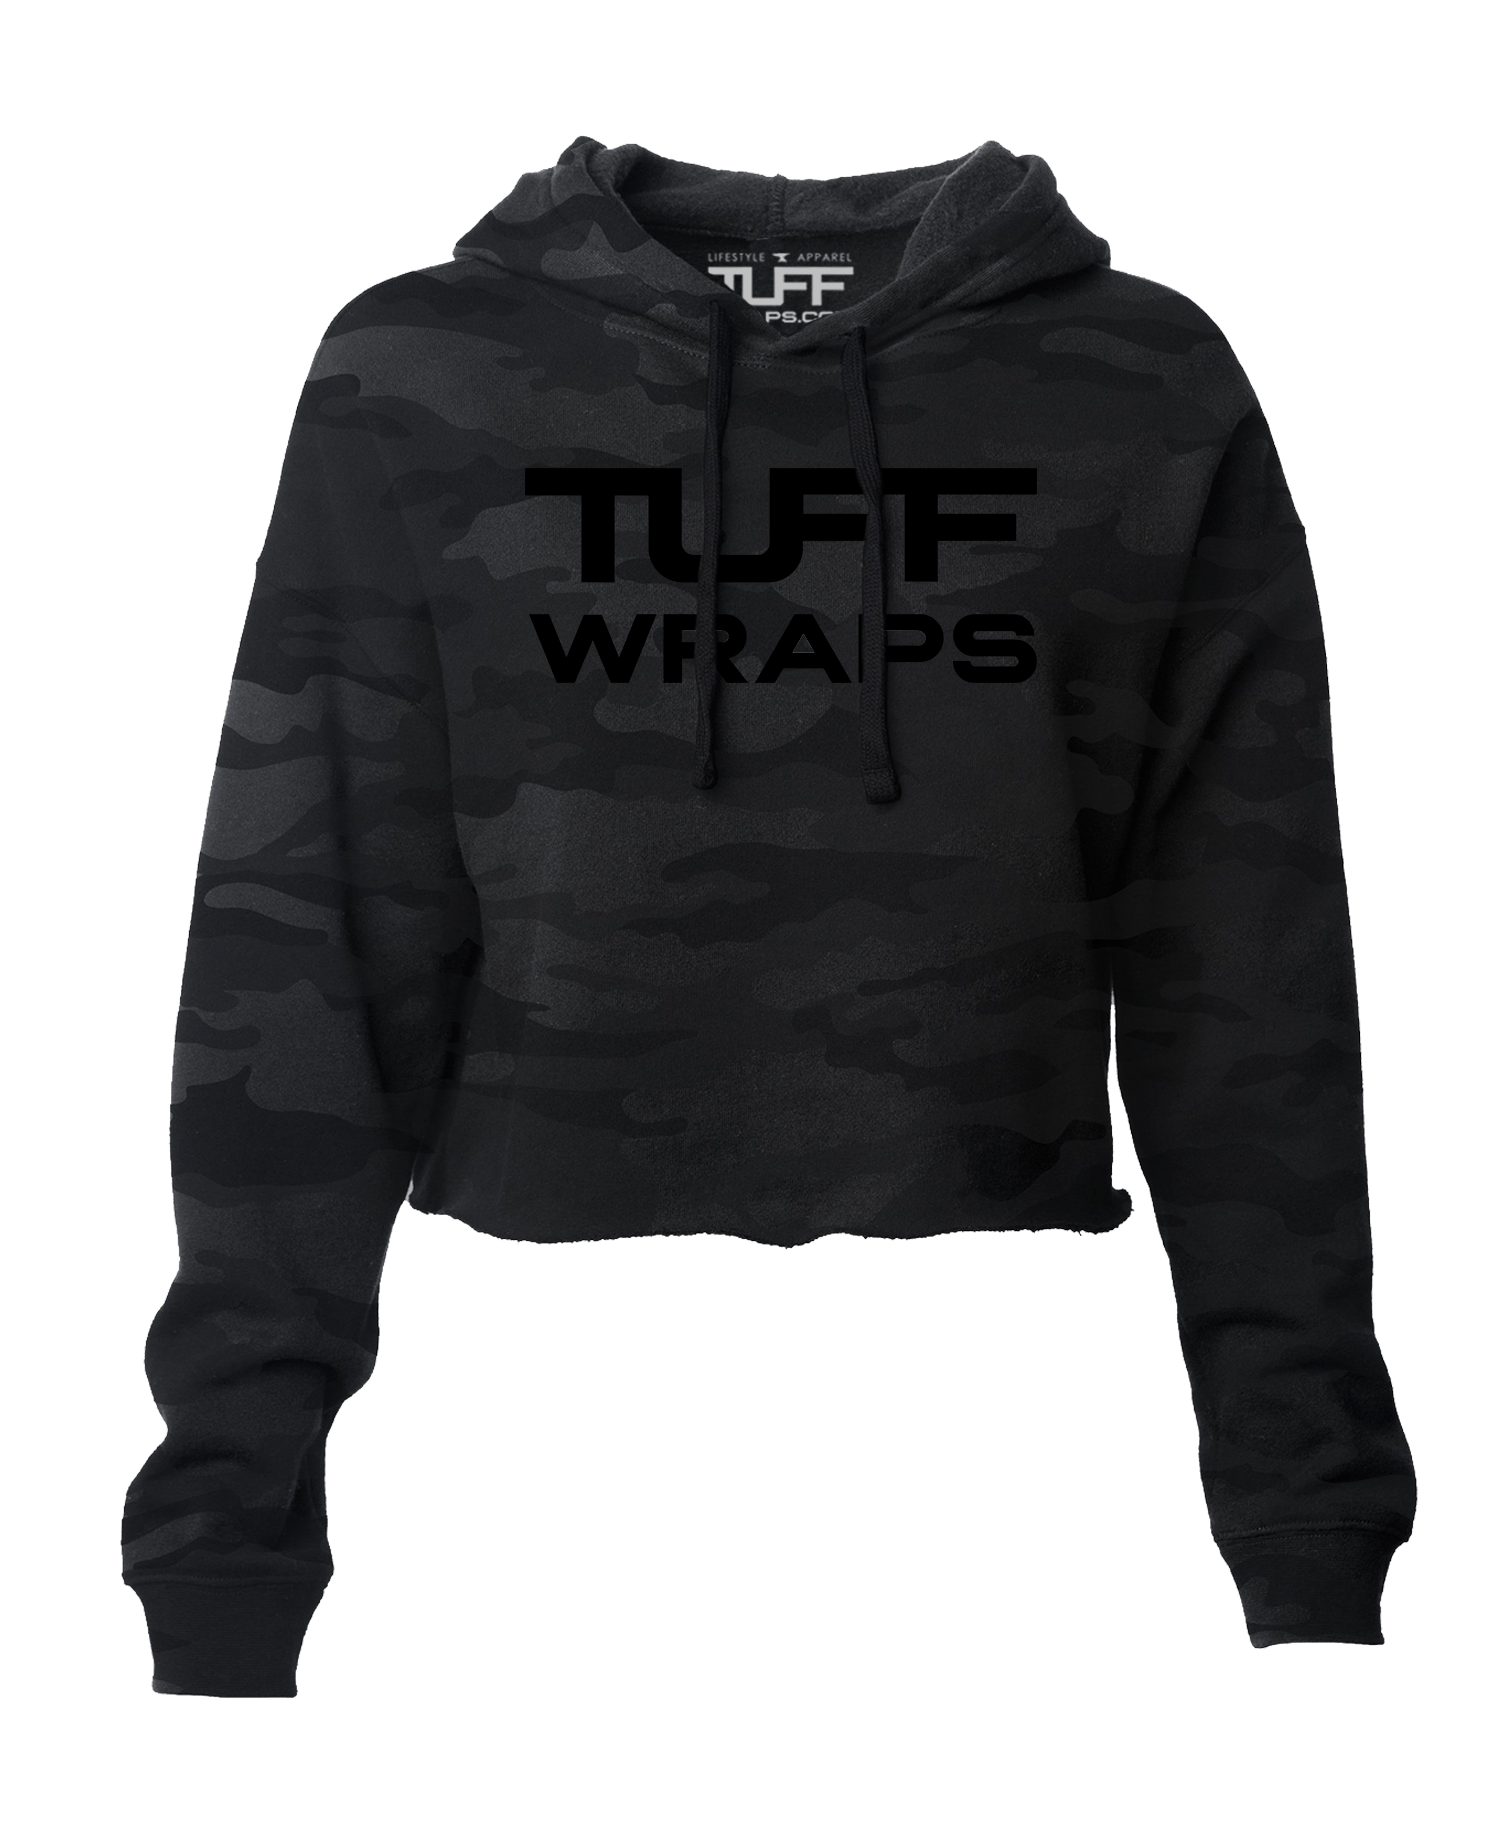 Tuffwraps Global Hooded Cropped Fleece - Black Camo Women's Outerwear